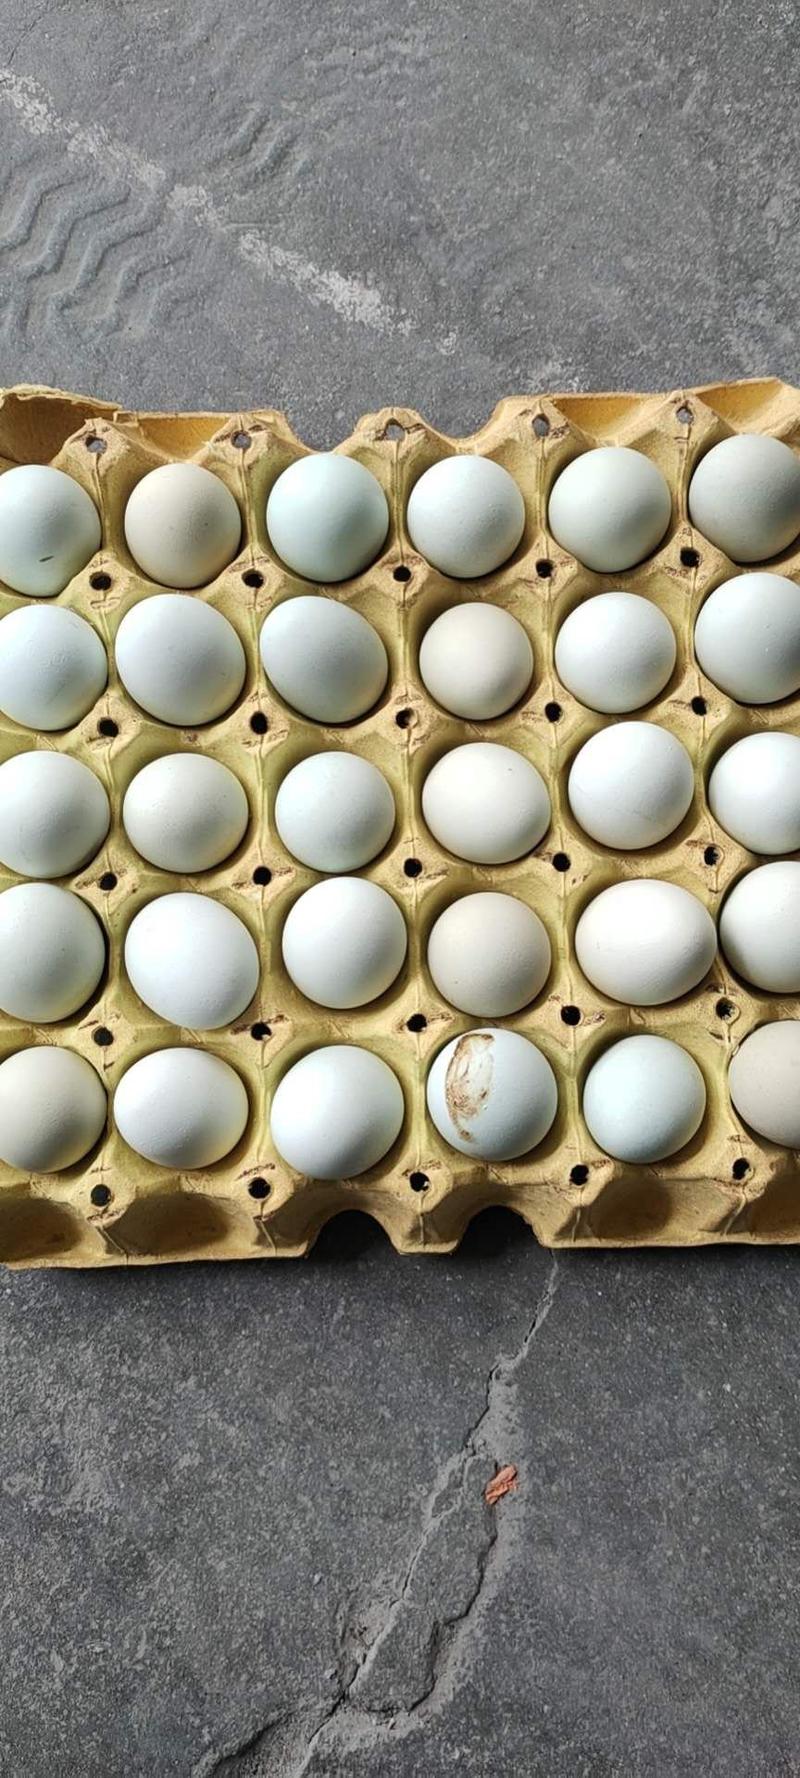 乌鸡蛋